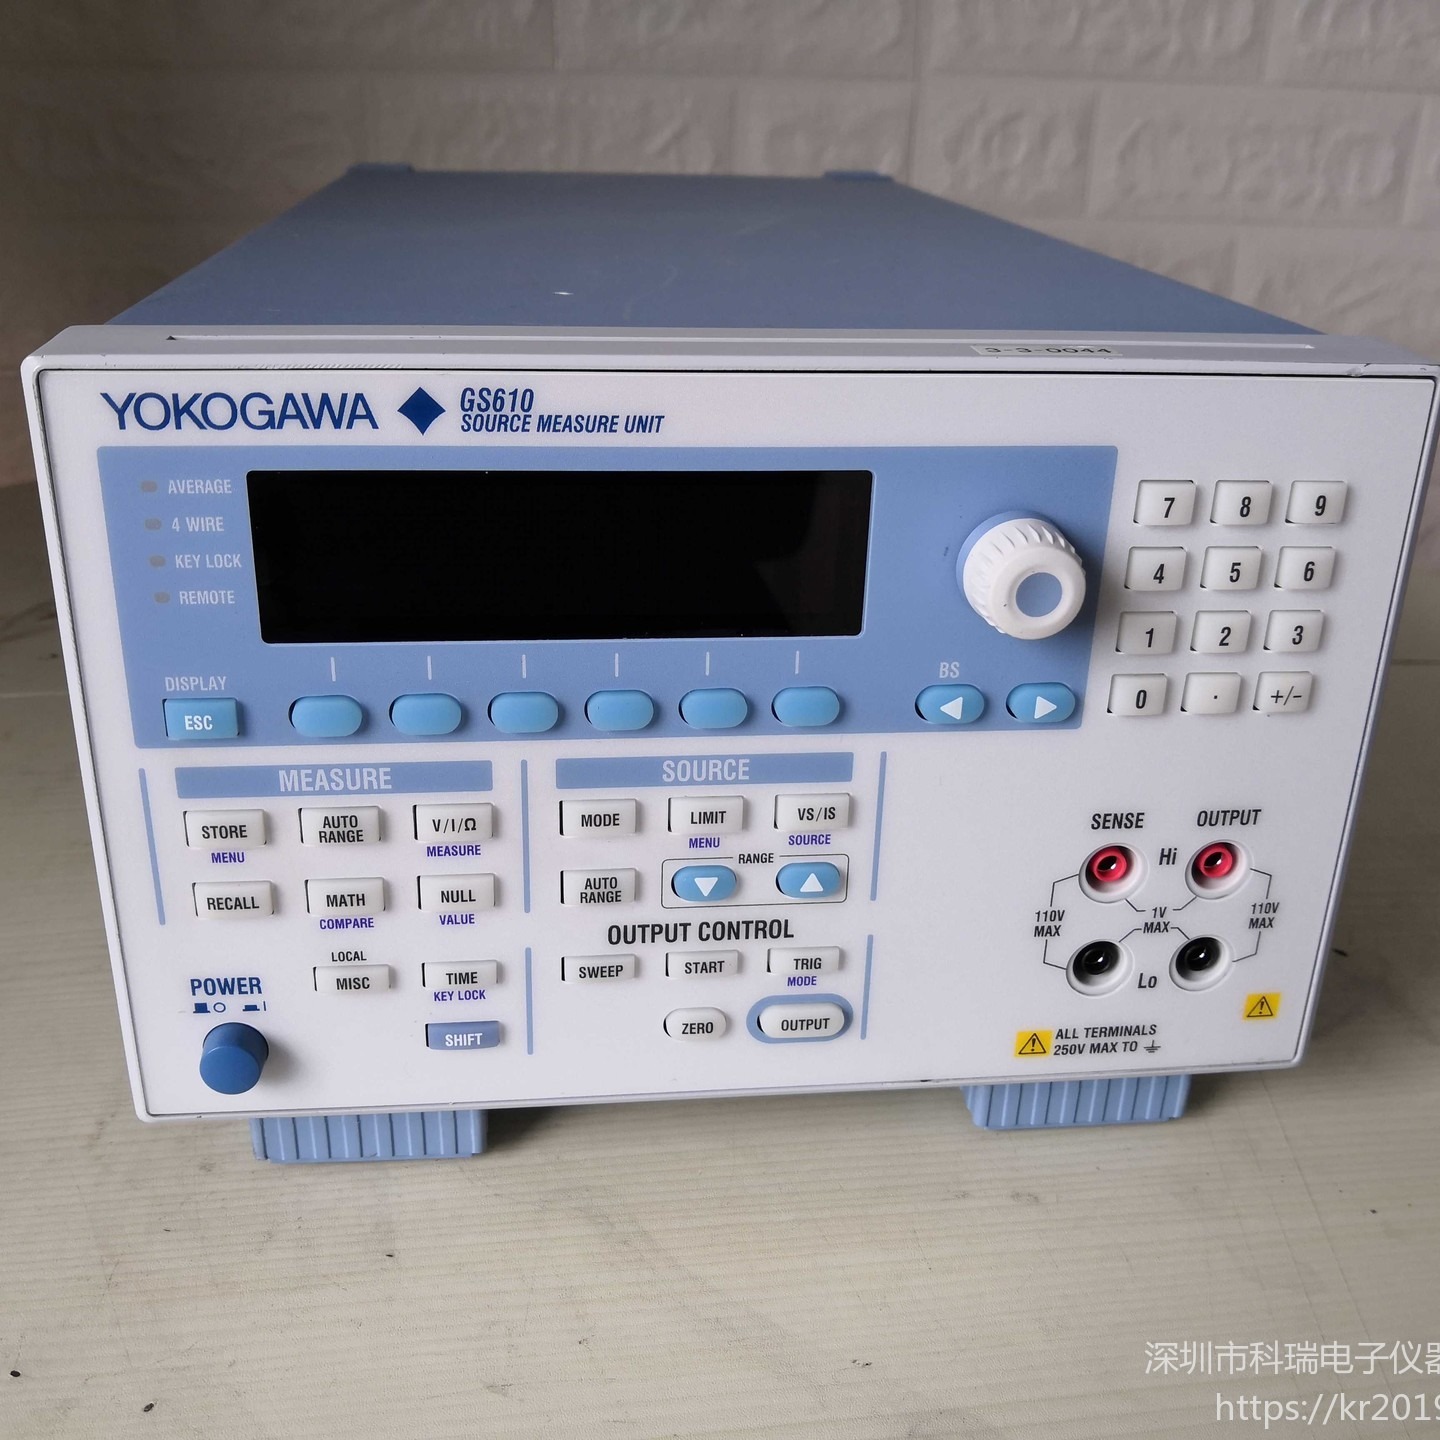 回收/出售/维修 横河Yokogawa GS610 信号源测量单元 降价出售